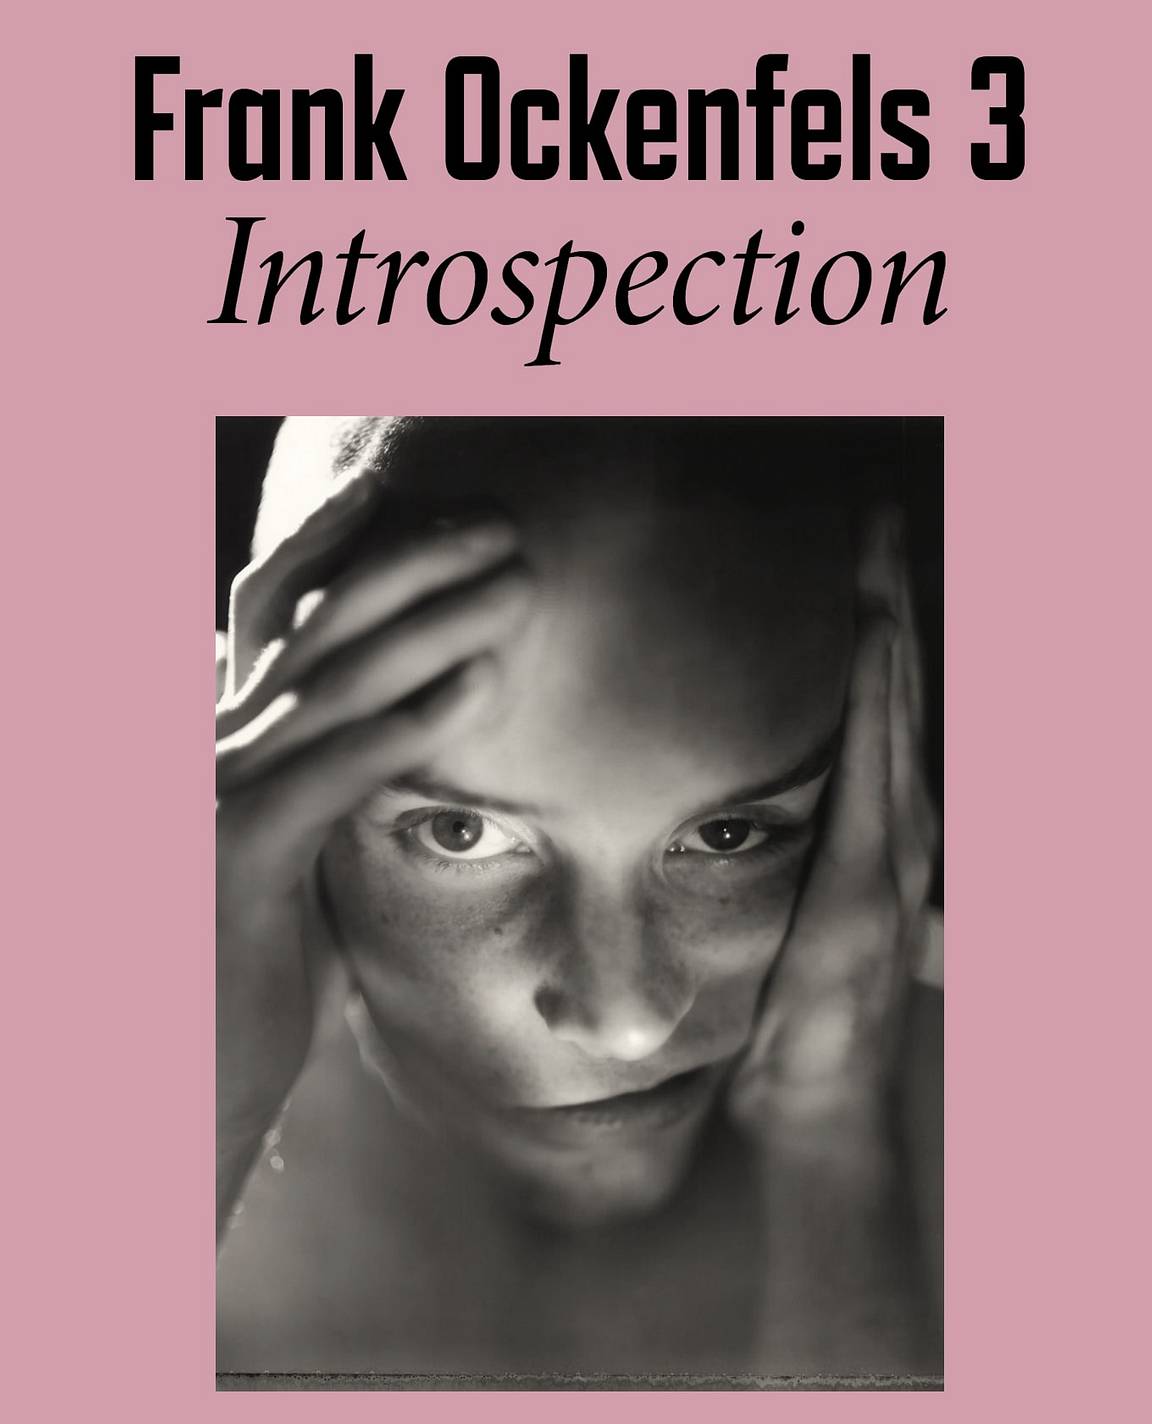 Frank Ockenfels 3 – Introspection